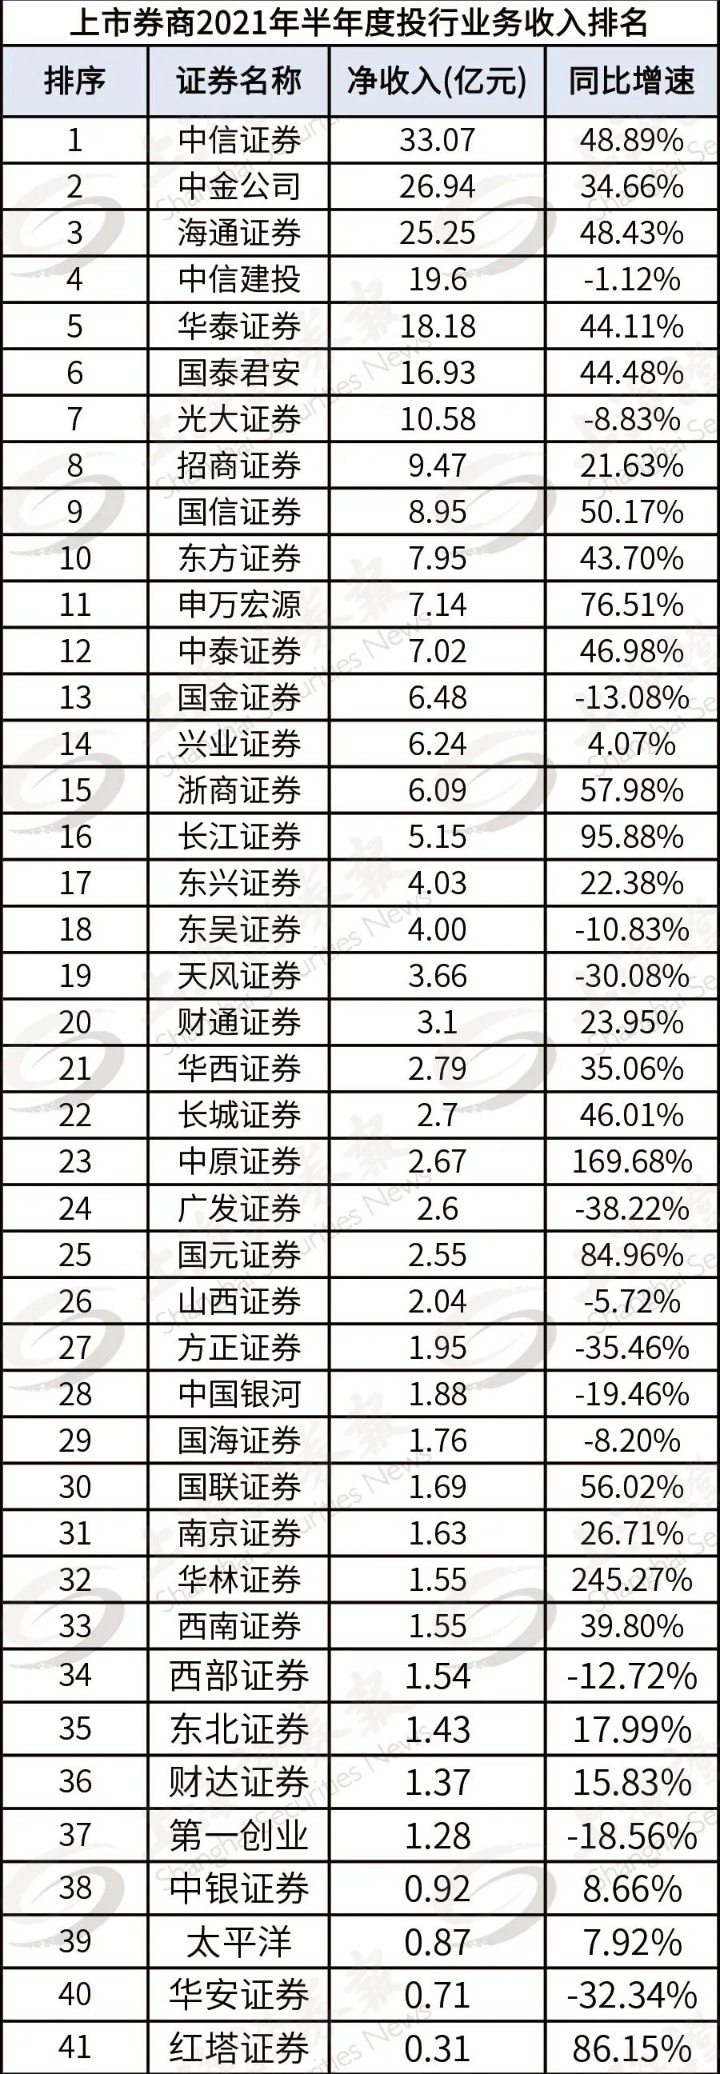 保代今年增员超七成 中原、长江等上半年爆发式提升 下半年头部券商“打法”曝光